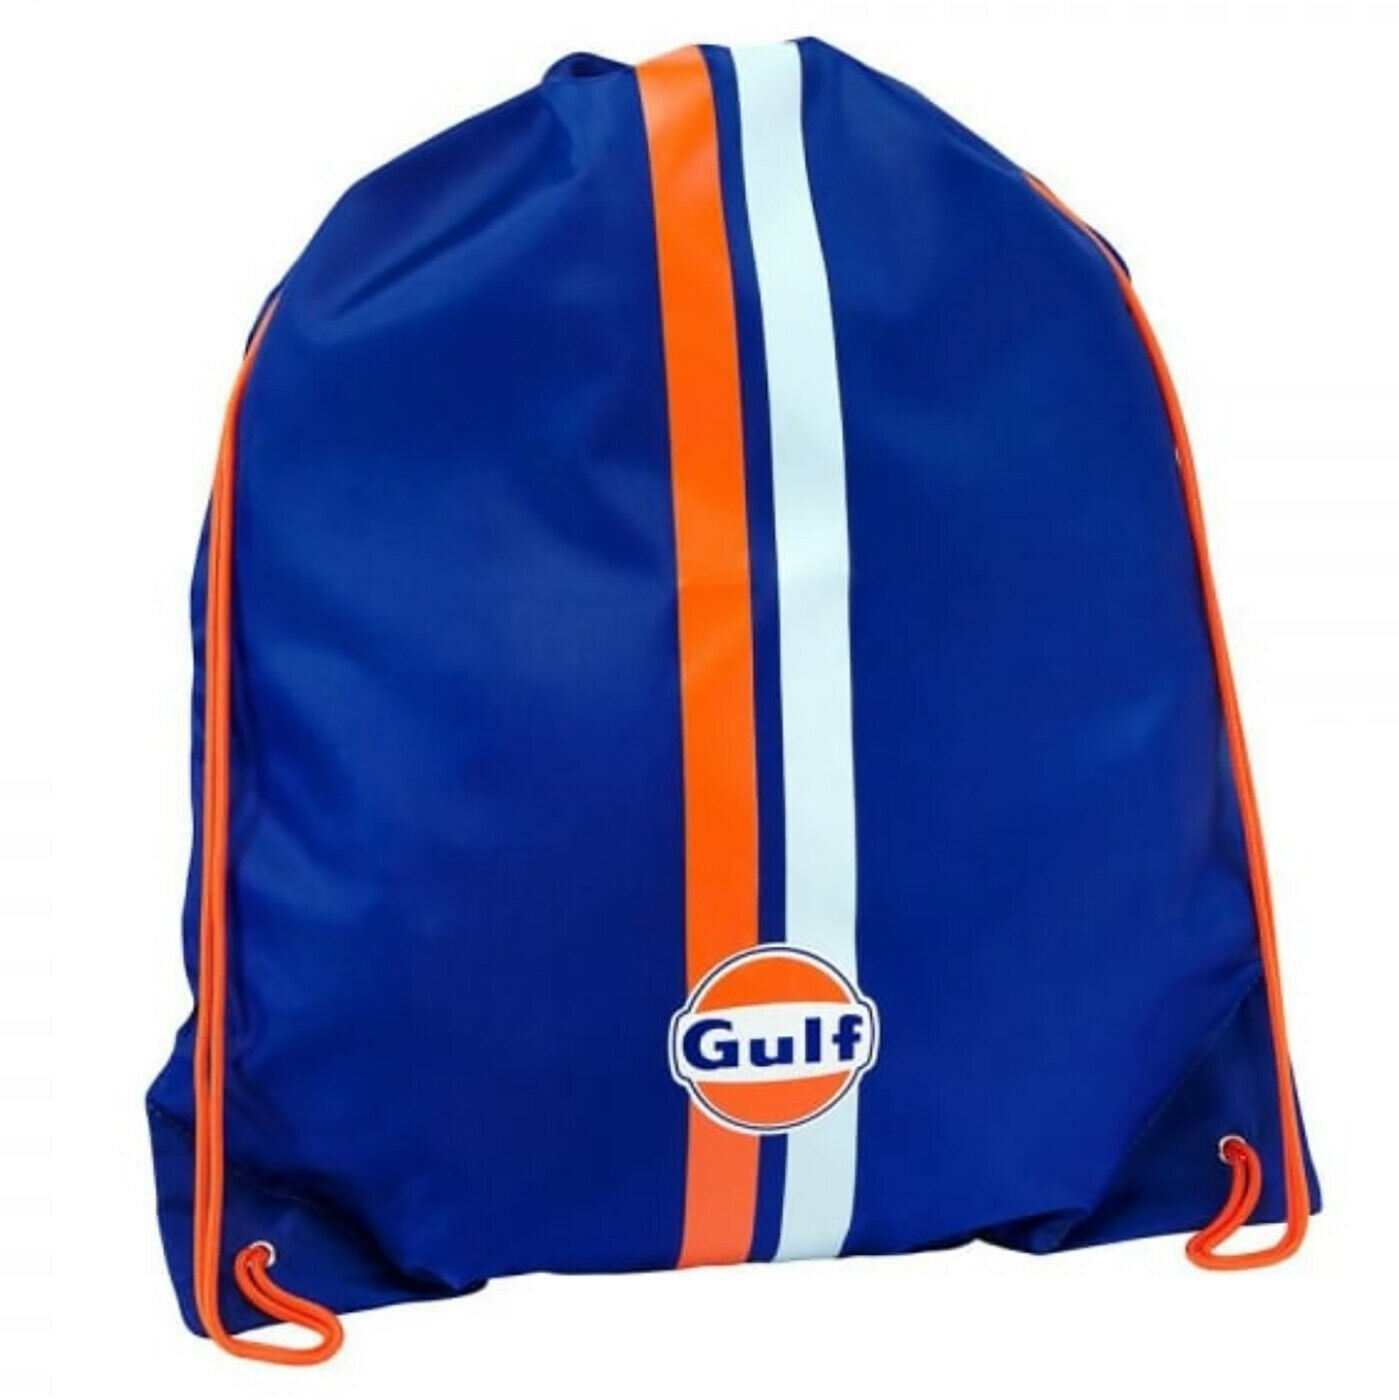 Gulf Official Draw String Bag ガルフ オフィシャル ジム バッグ リュック ブルー